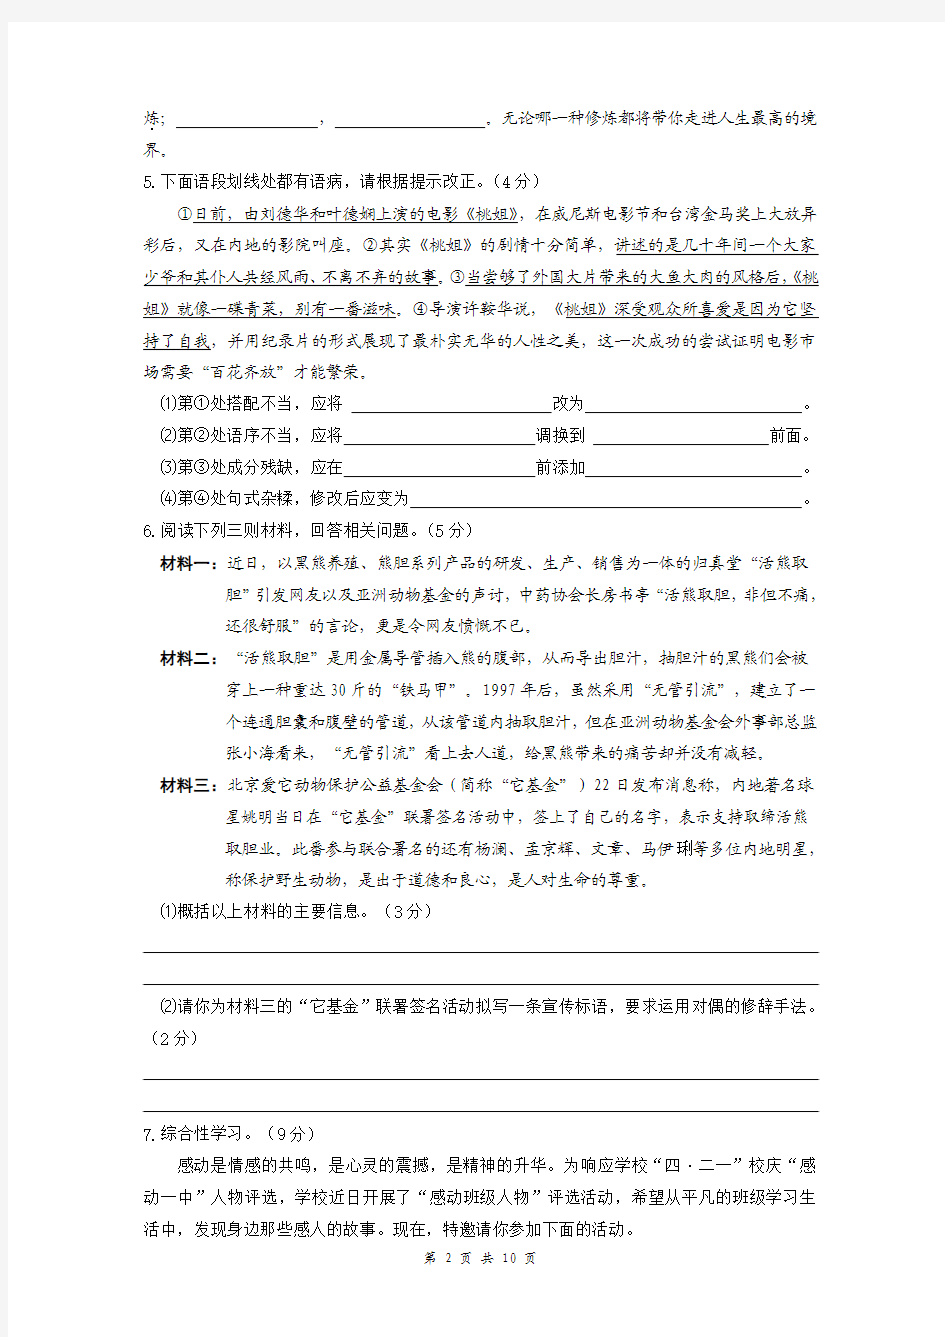 重庆一中初2012级11-12学年(下)半期试题——语文